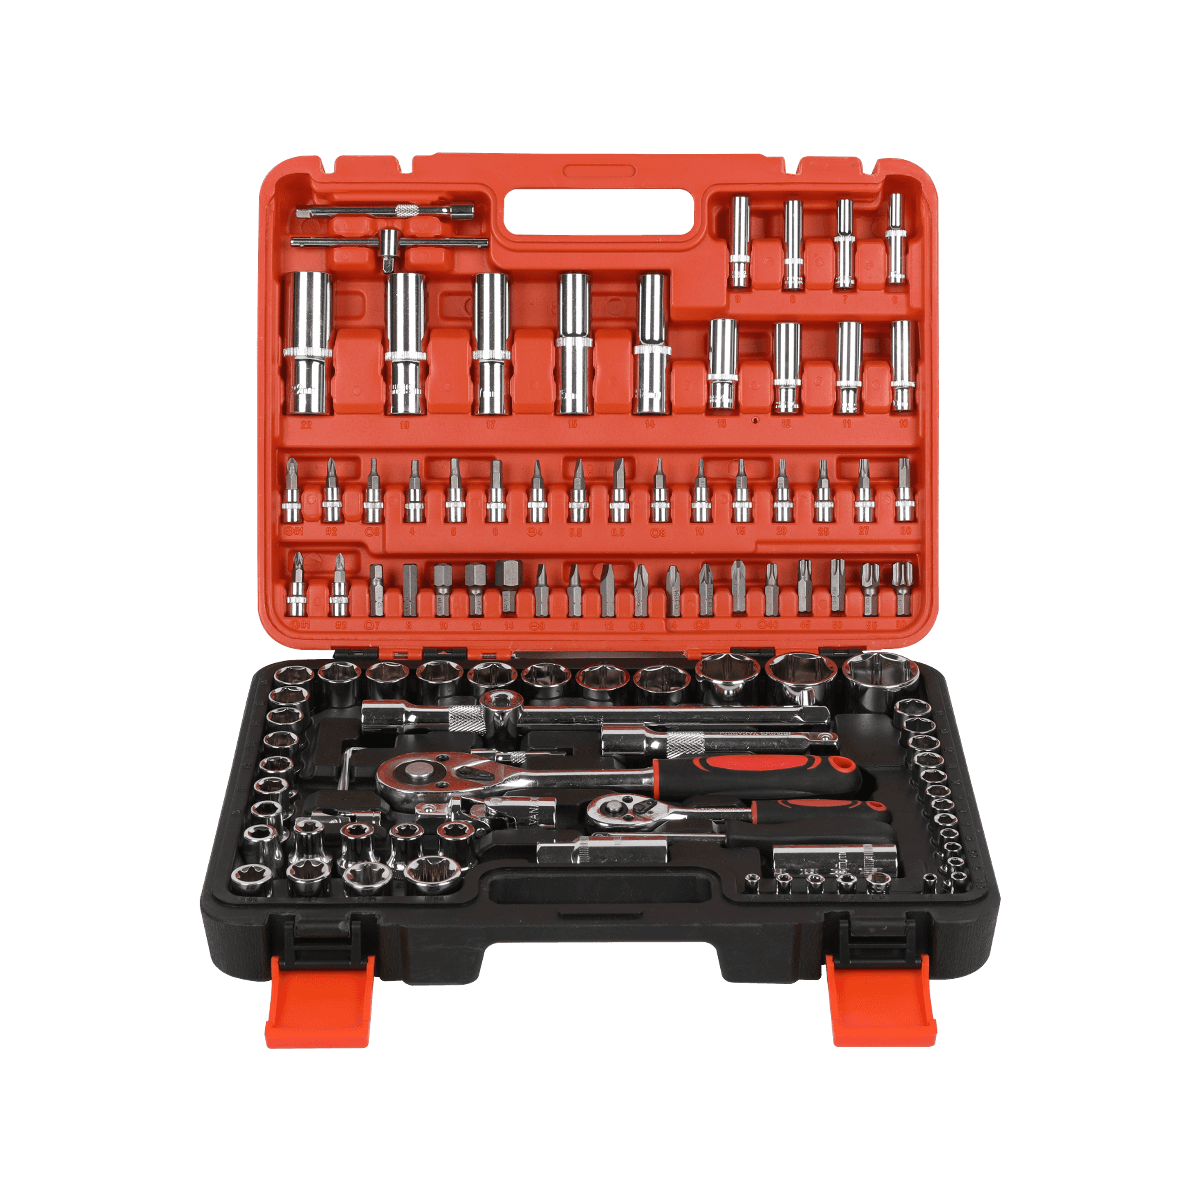 108 peças de fixadores de hardware para conserto de celular conjunto de ferramentas manuais conjuntos de ferramentas domésticas gerais